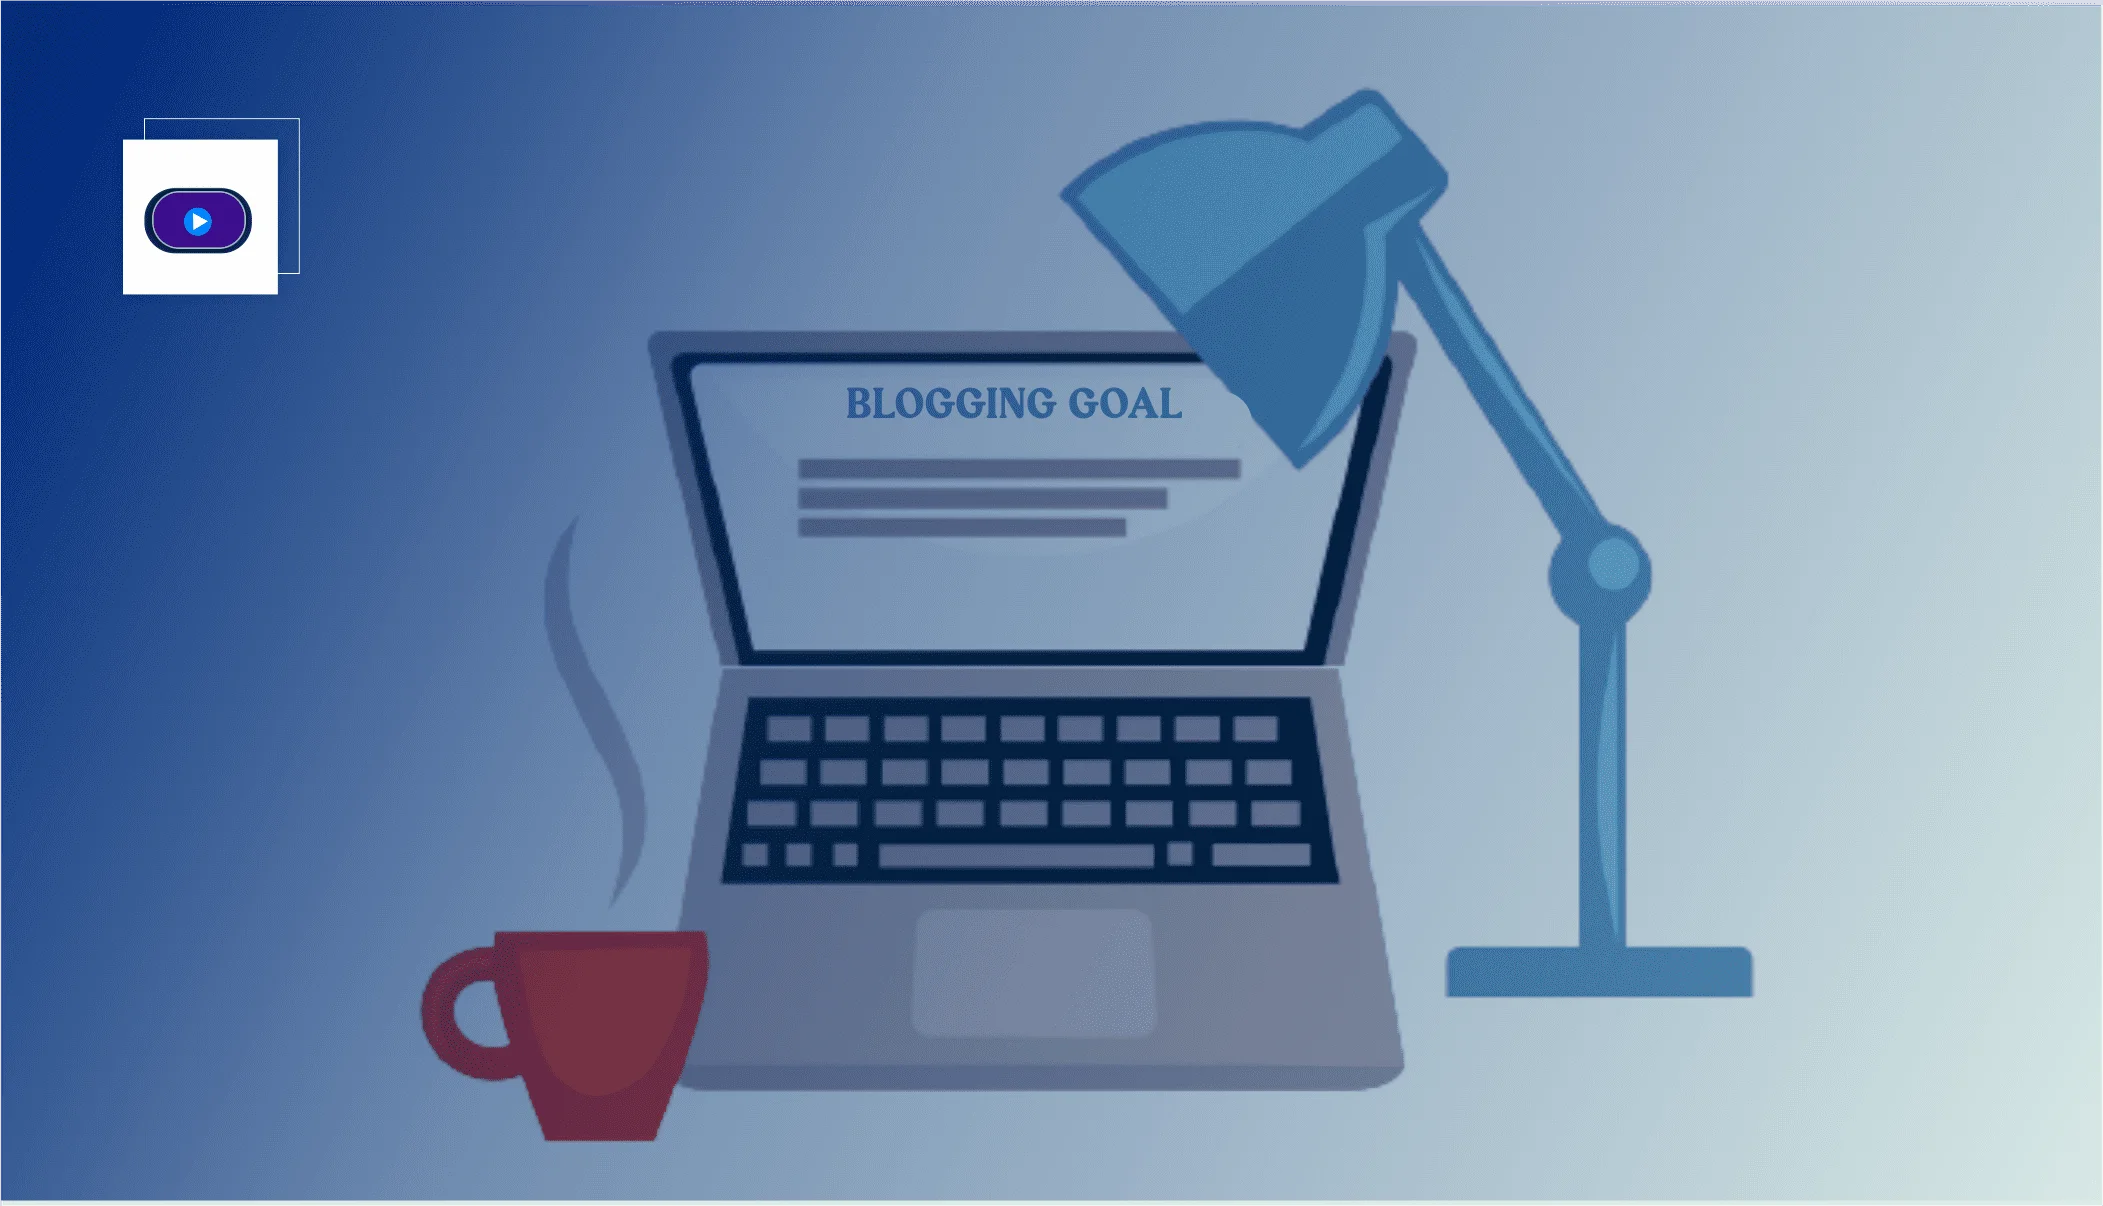 AbdulTech Online | Blog Goals